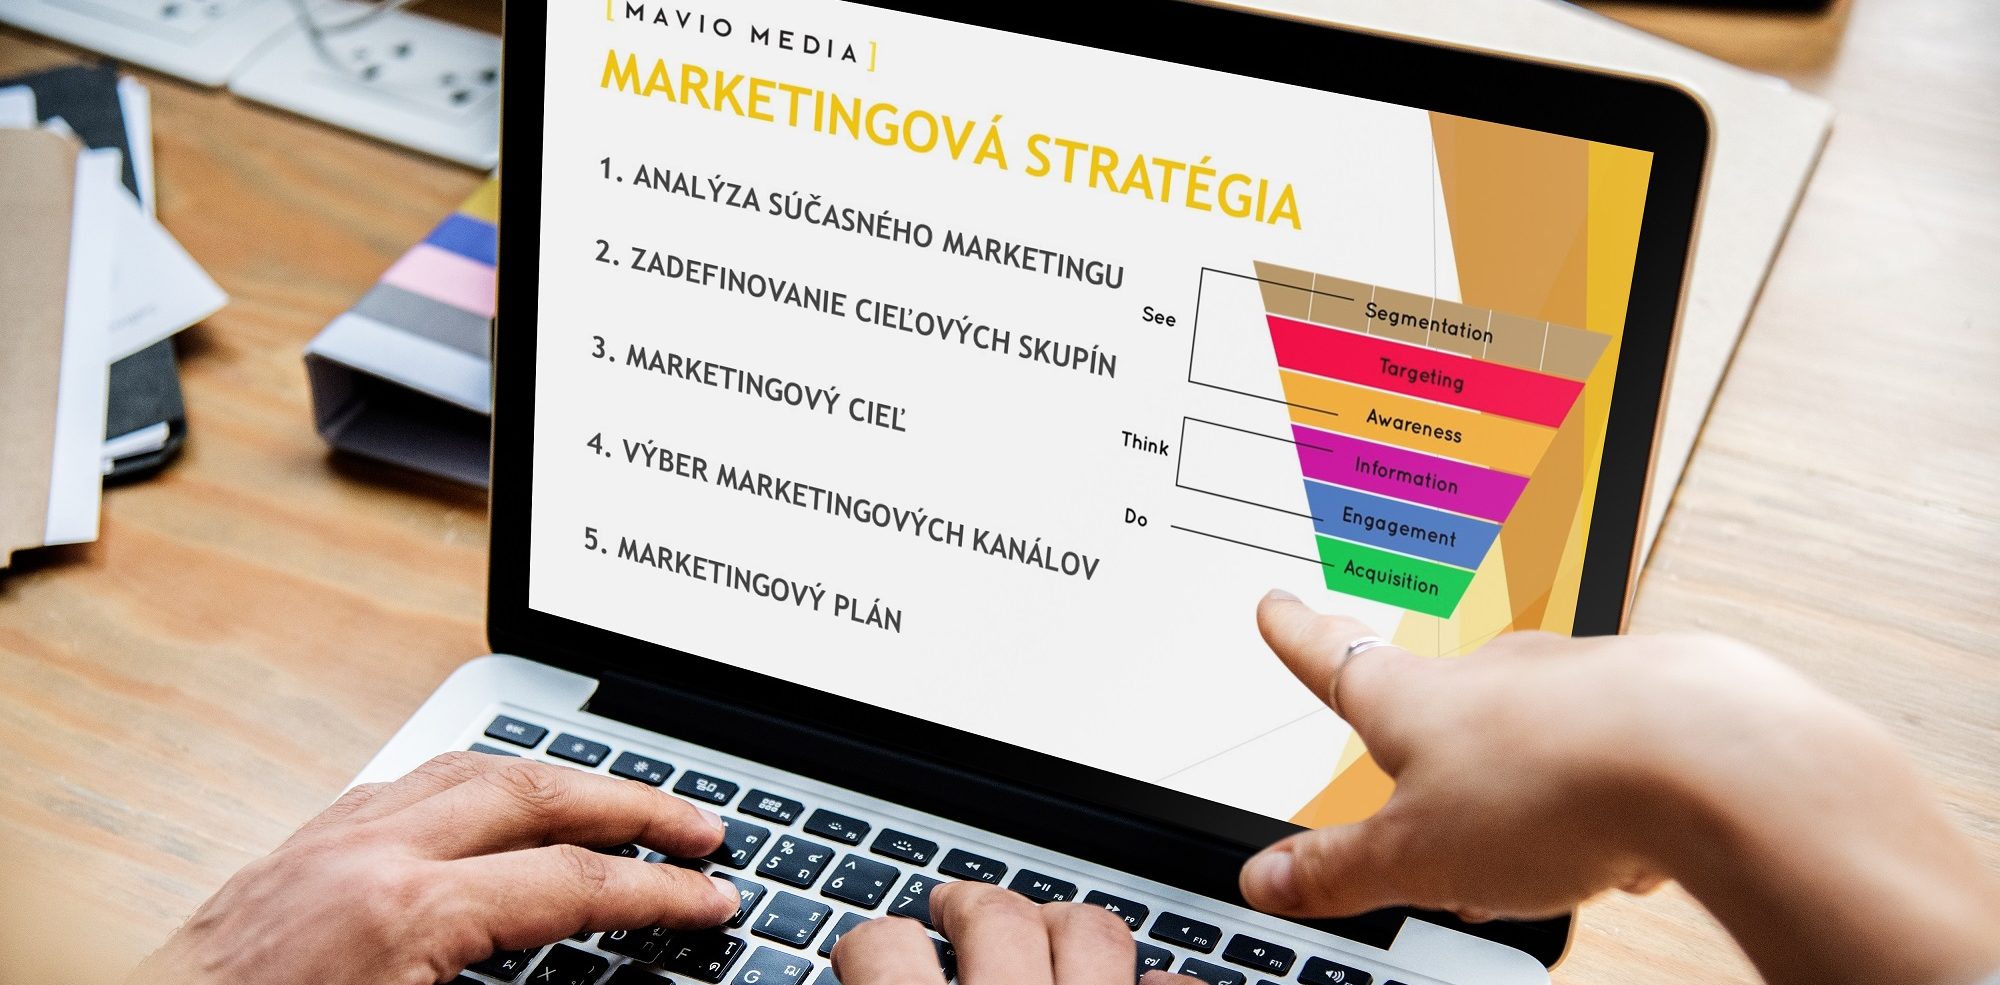 Ako sa tvorí úspešná marketingová stratégia? (case study)